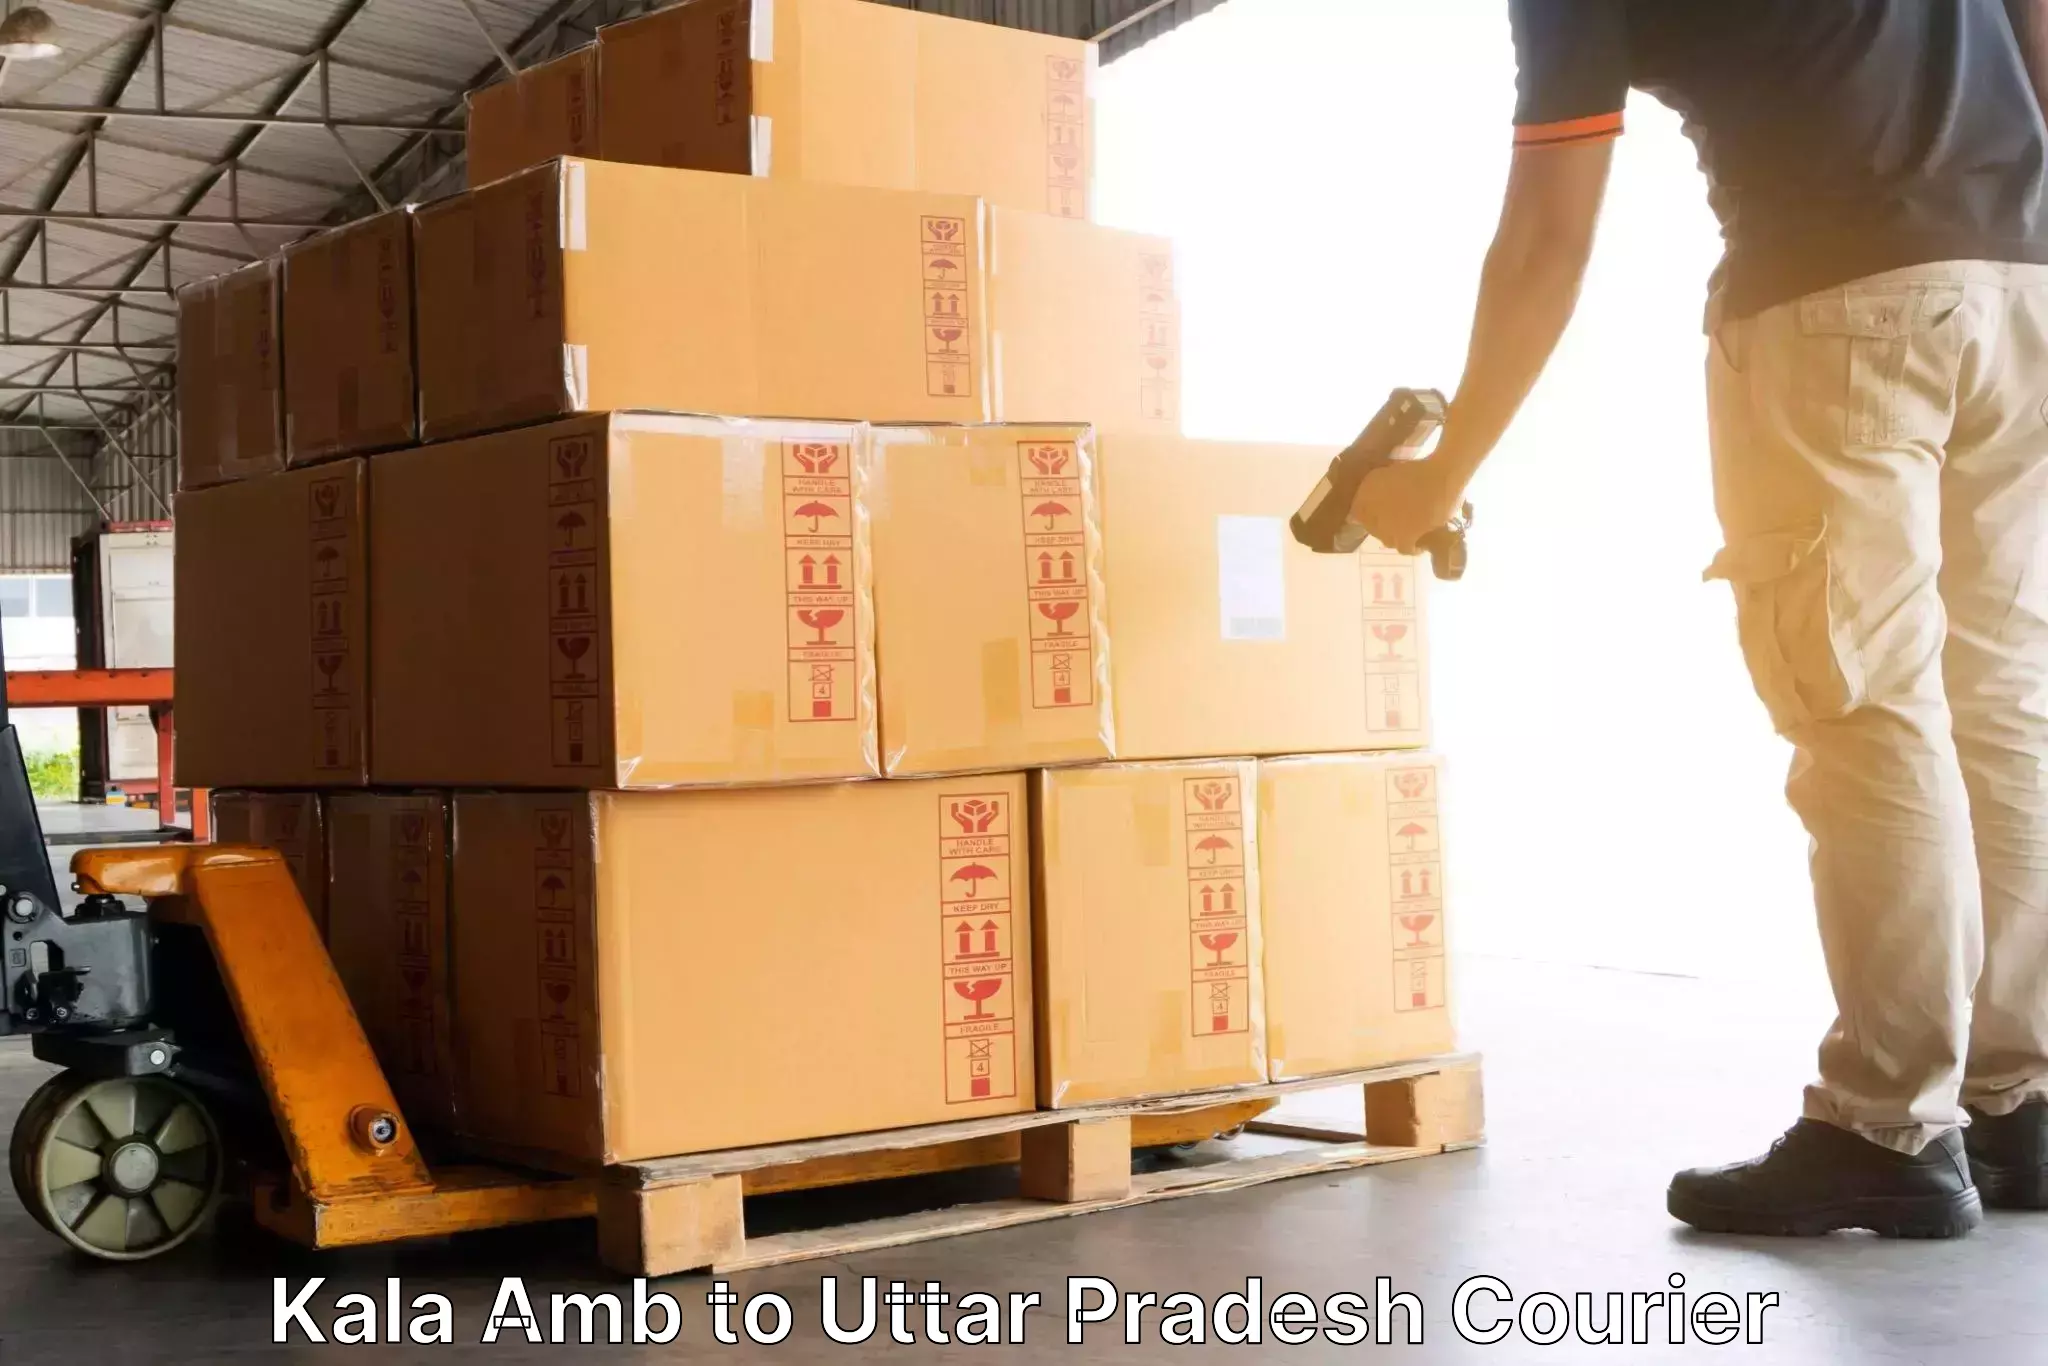 Efficient parcel service Kala Amb to Mehnajpur